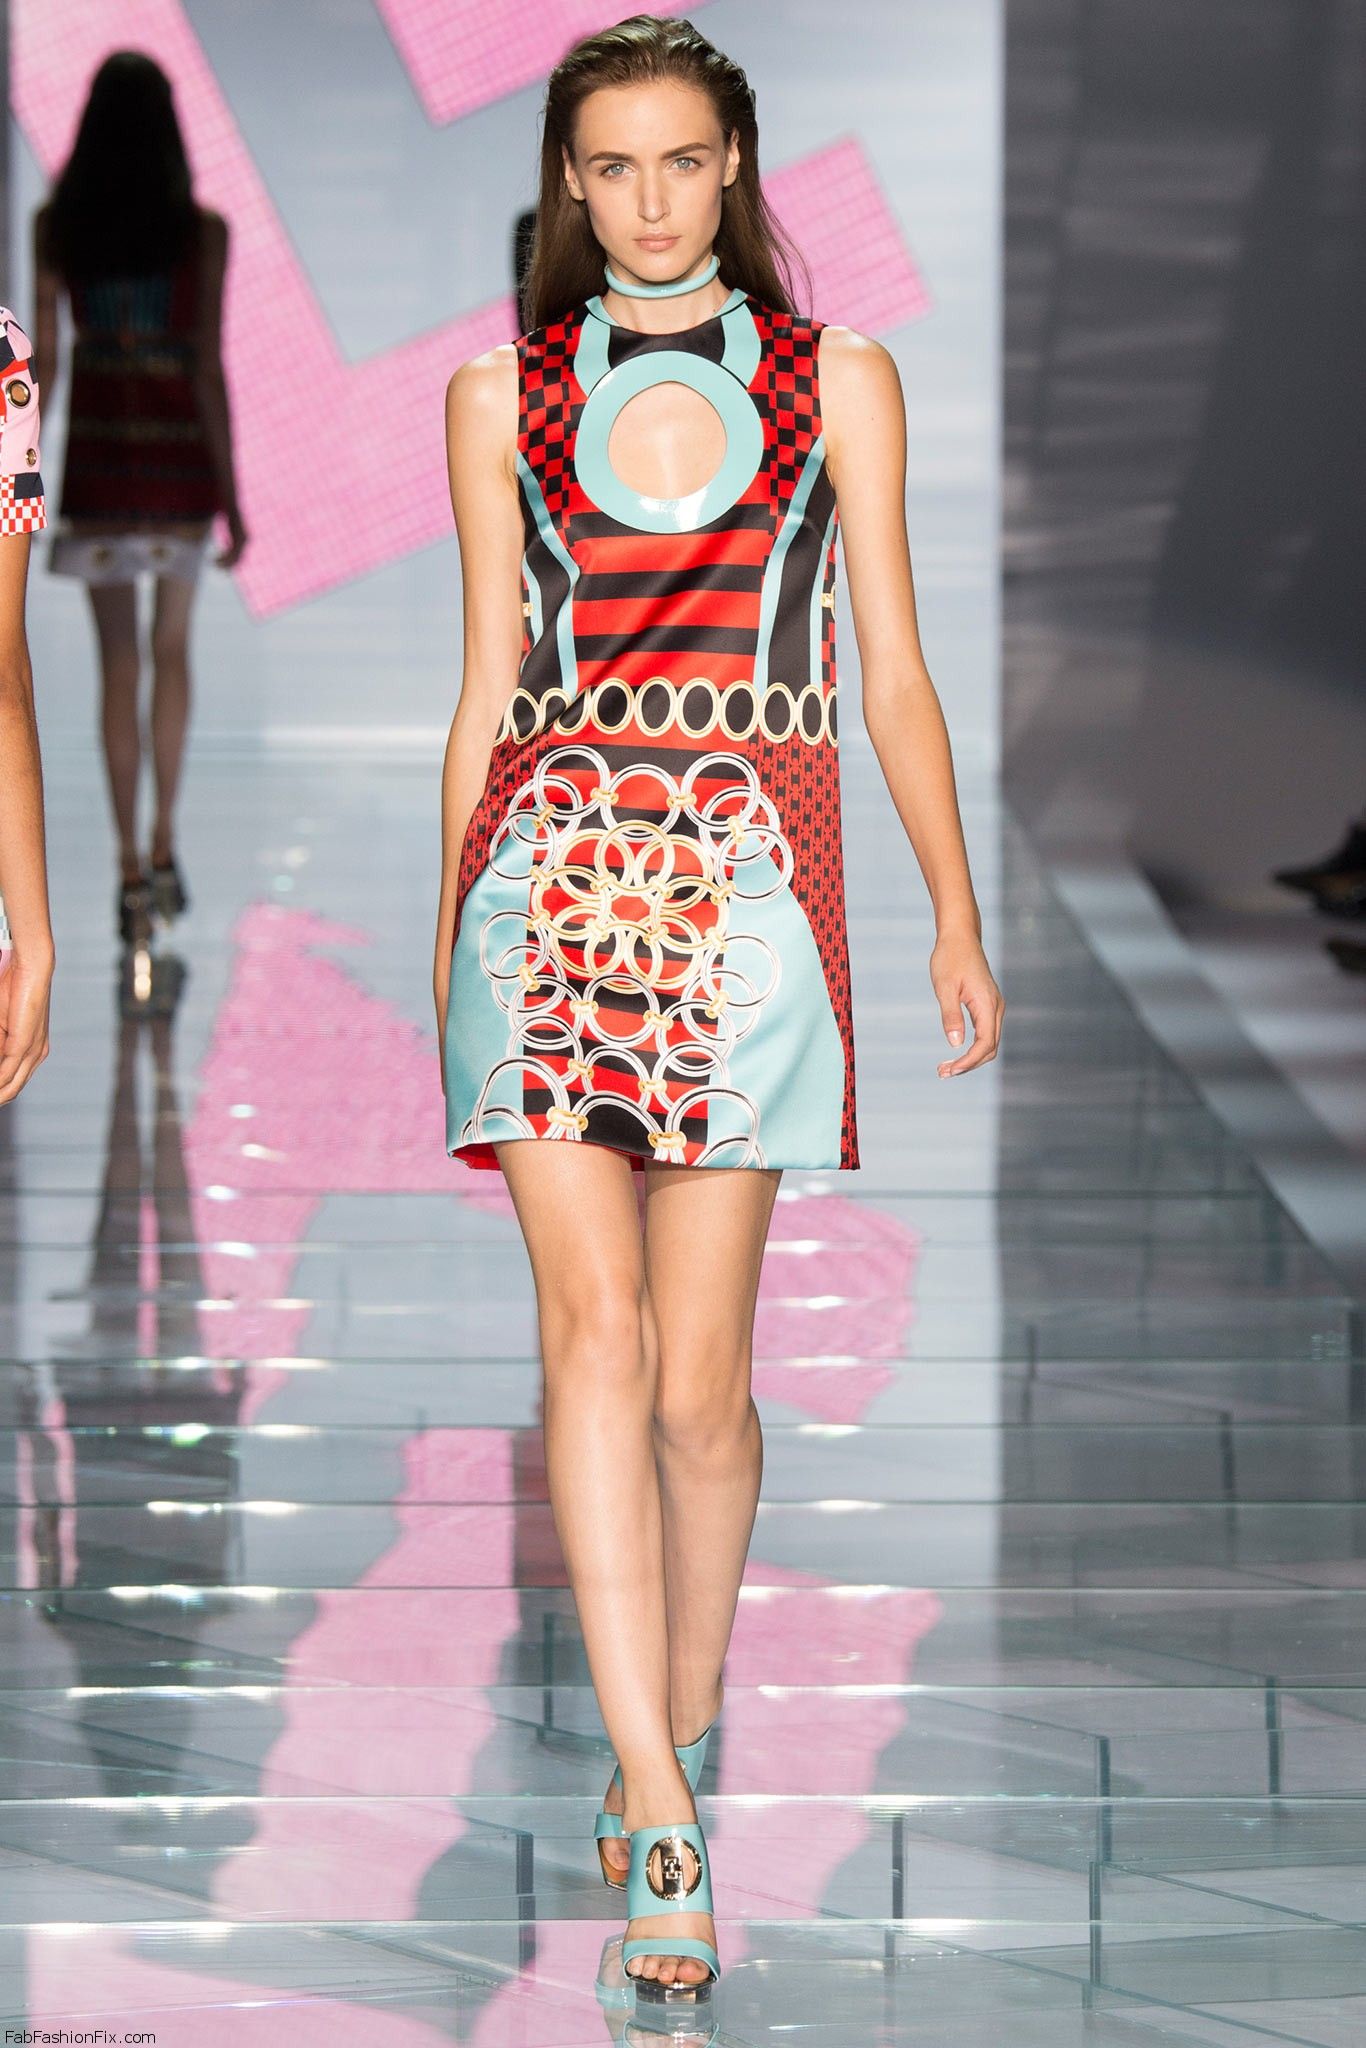 Versace spring/summer 2015 collection – Milan fashion week | Fab ...